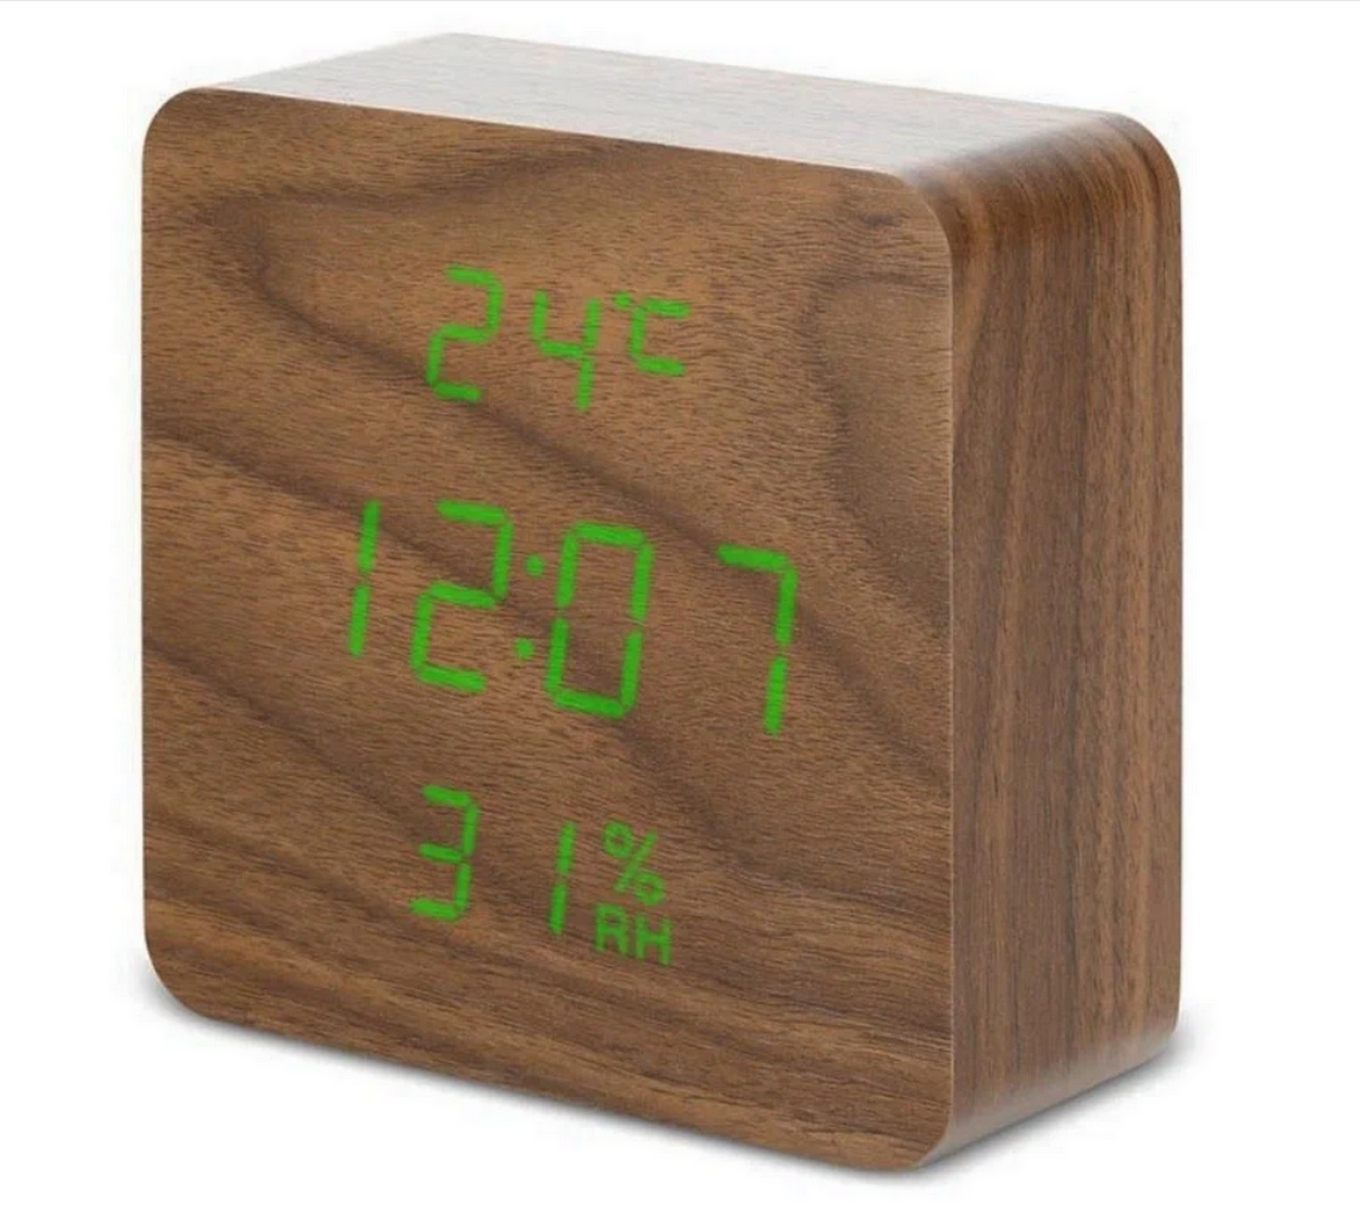 Часы VST-872S-4 Green (C/дата/деревянный корпус) USB (коричневый)